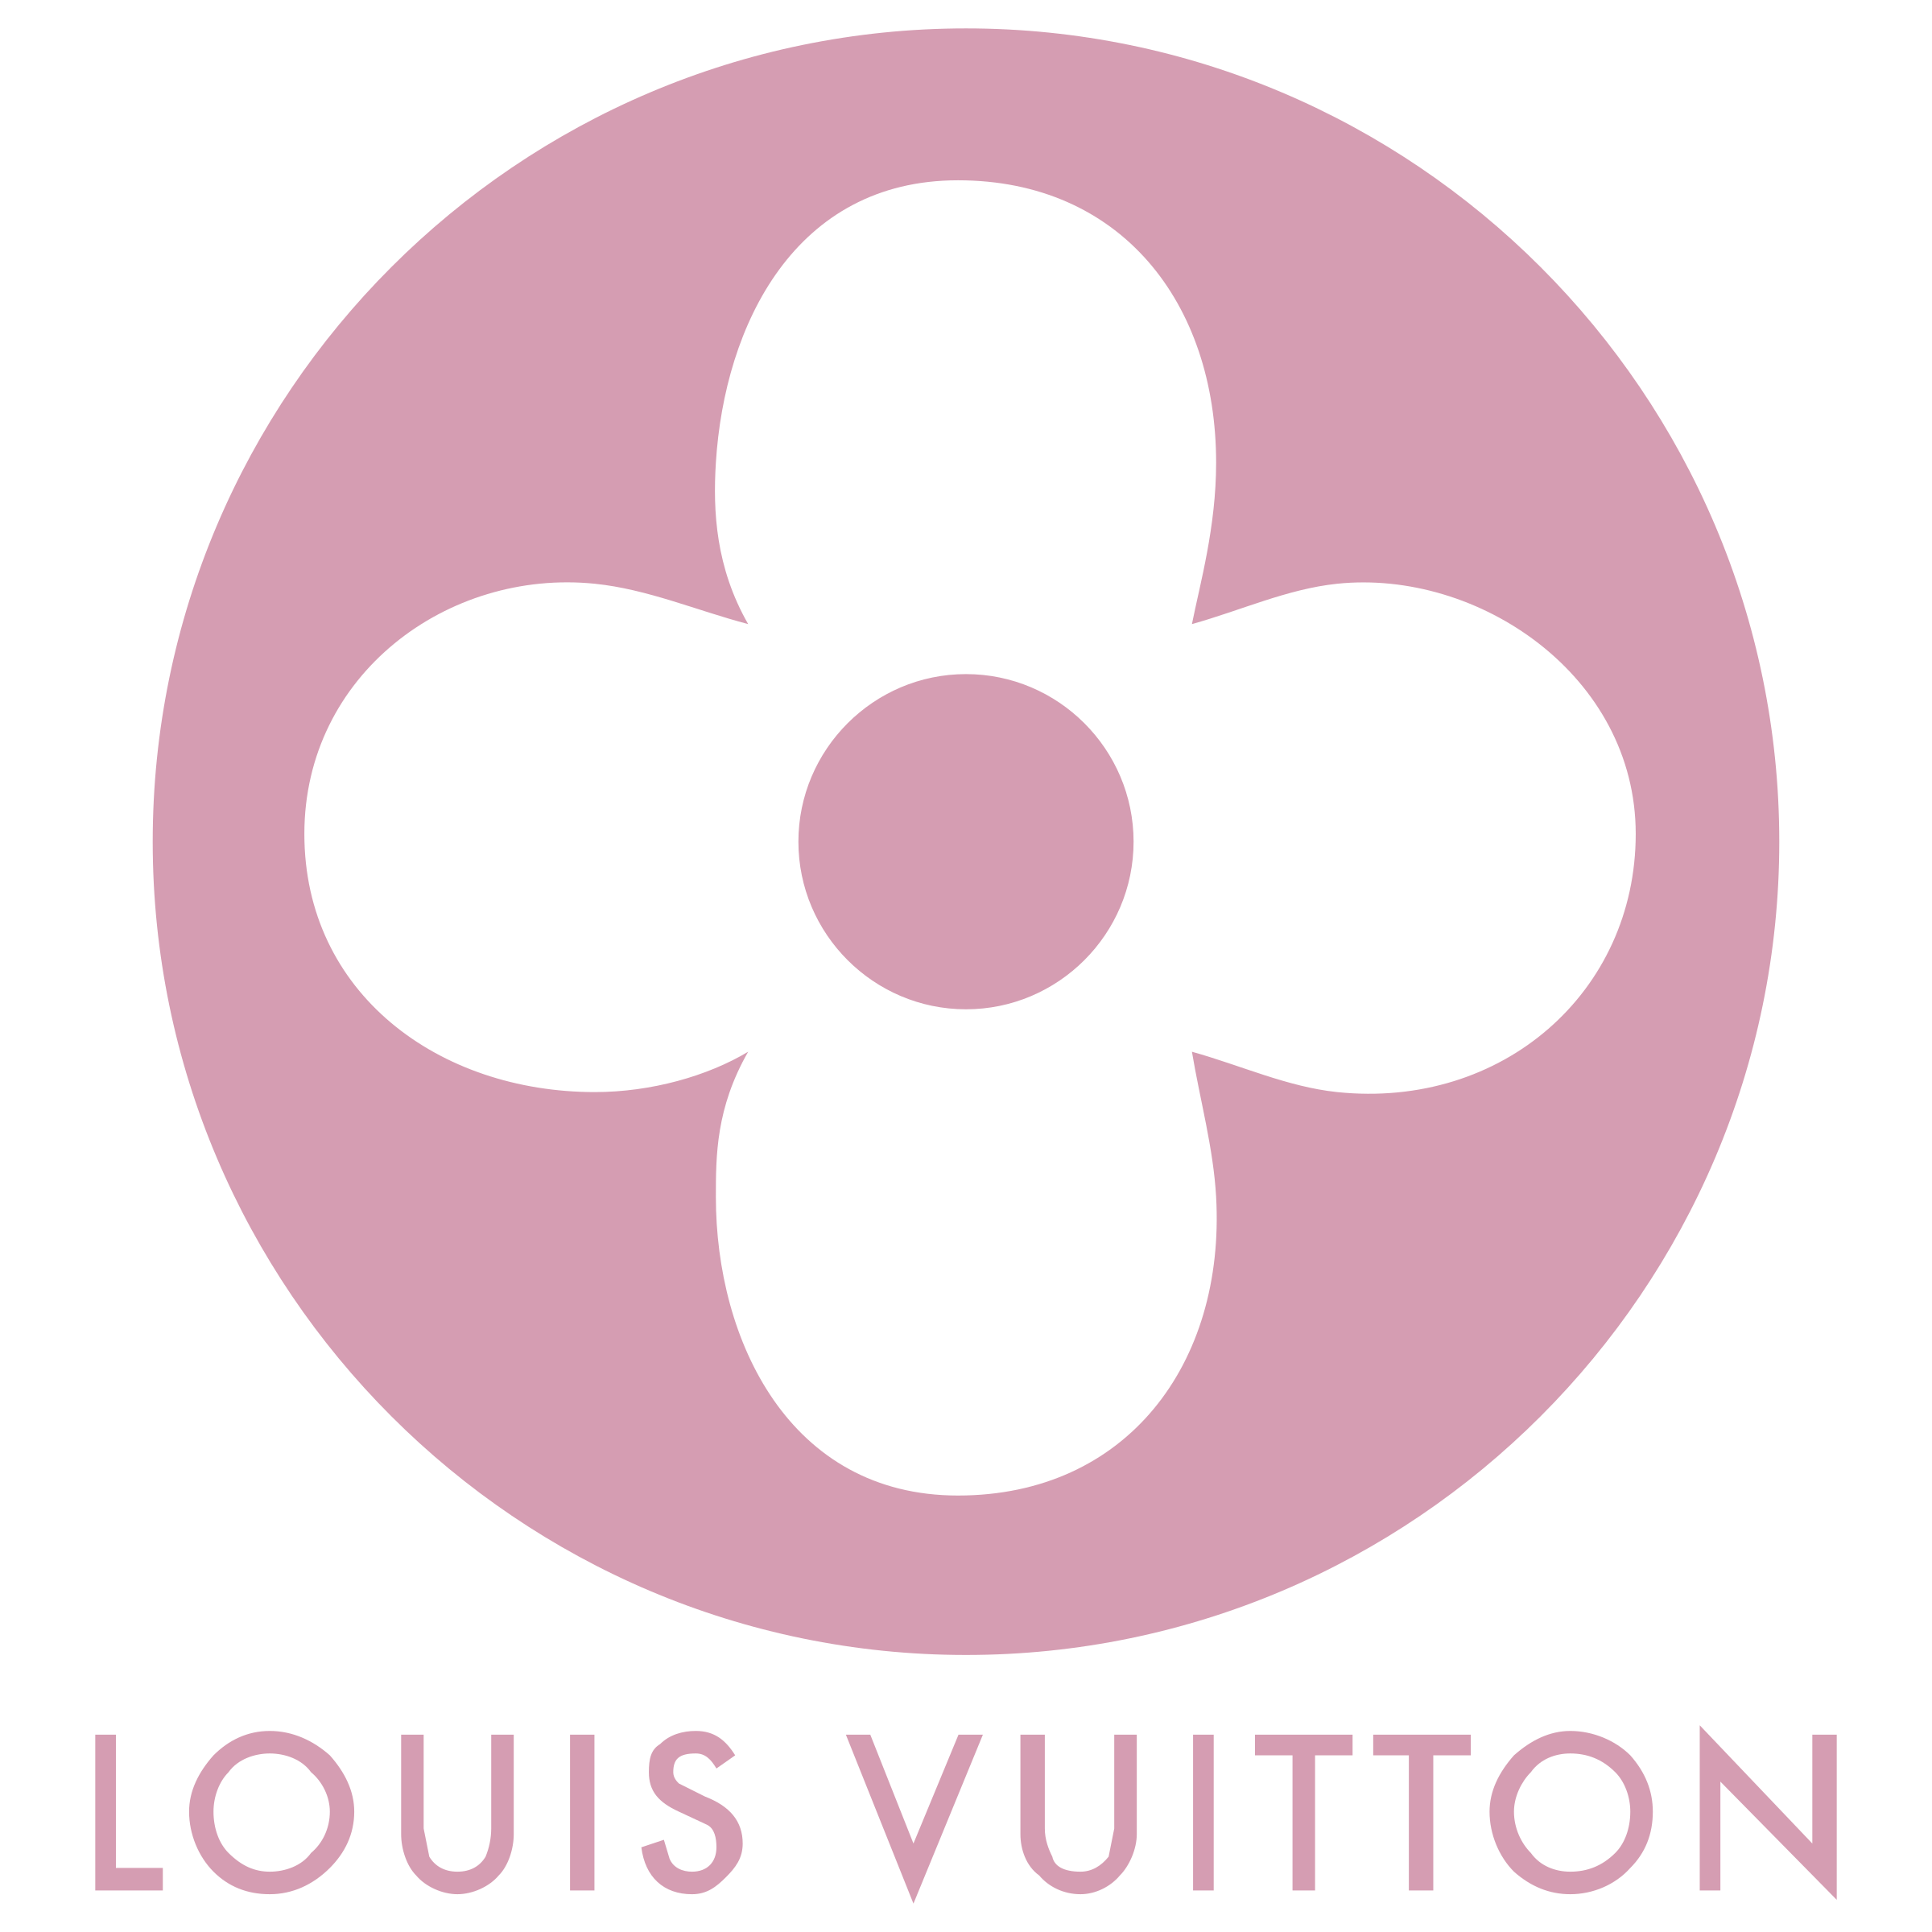 Louis Vuitton Transparent Logo - Louis Vuitton Logo PNG Transparent & SVG Vector - Freebie Supply